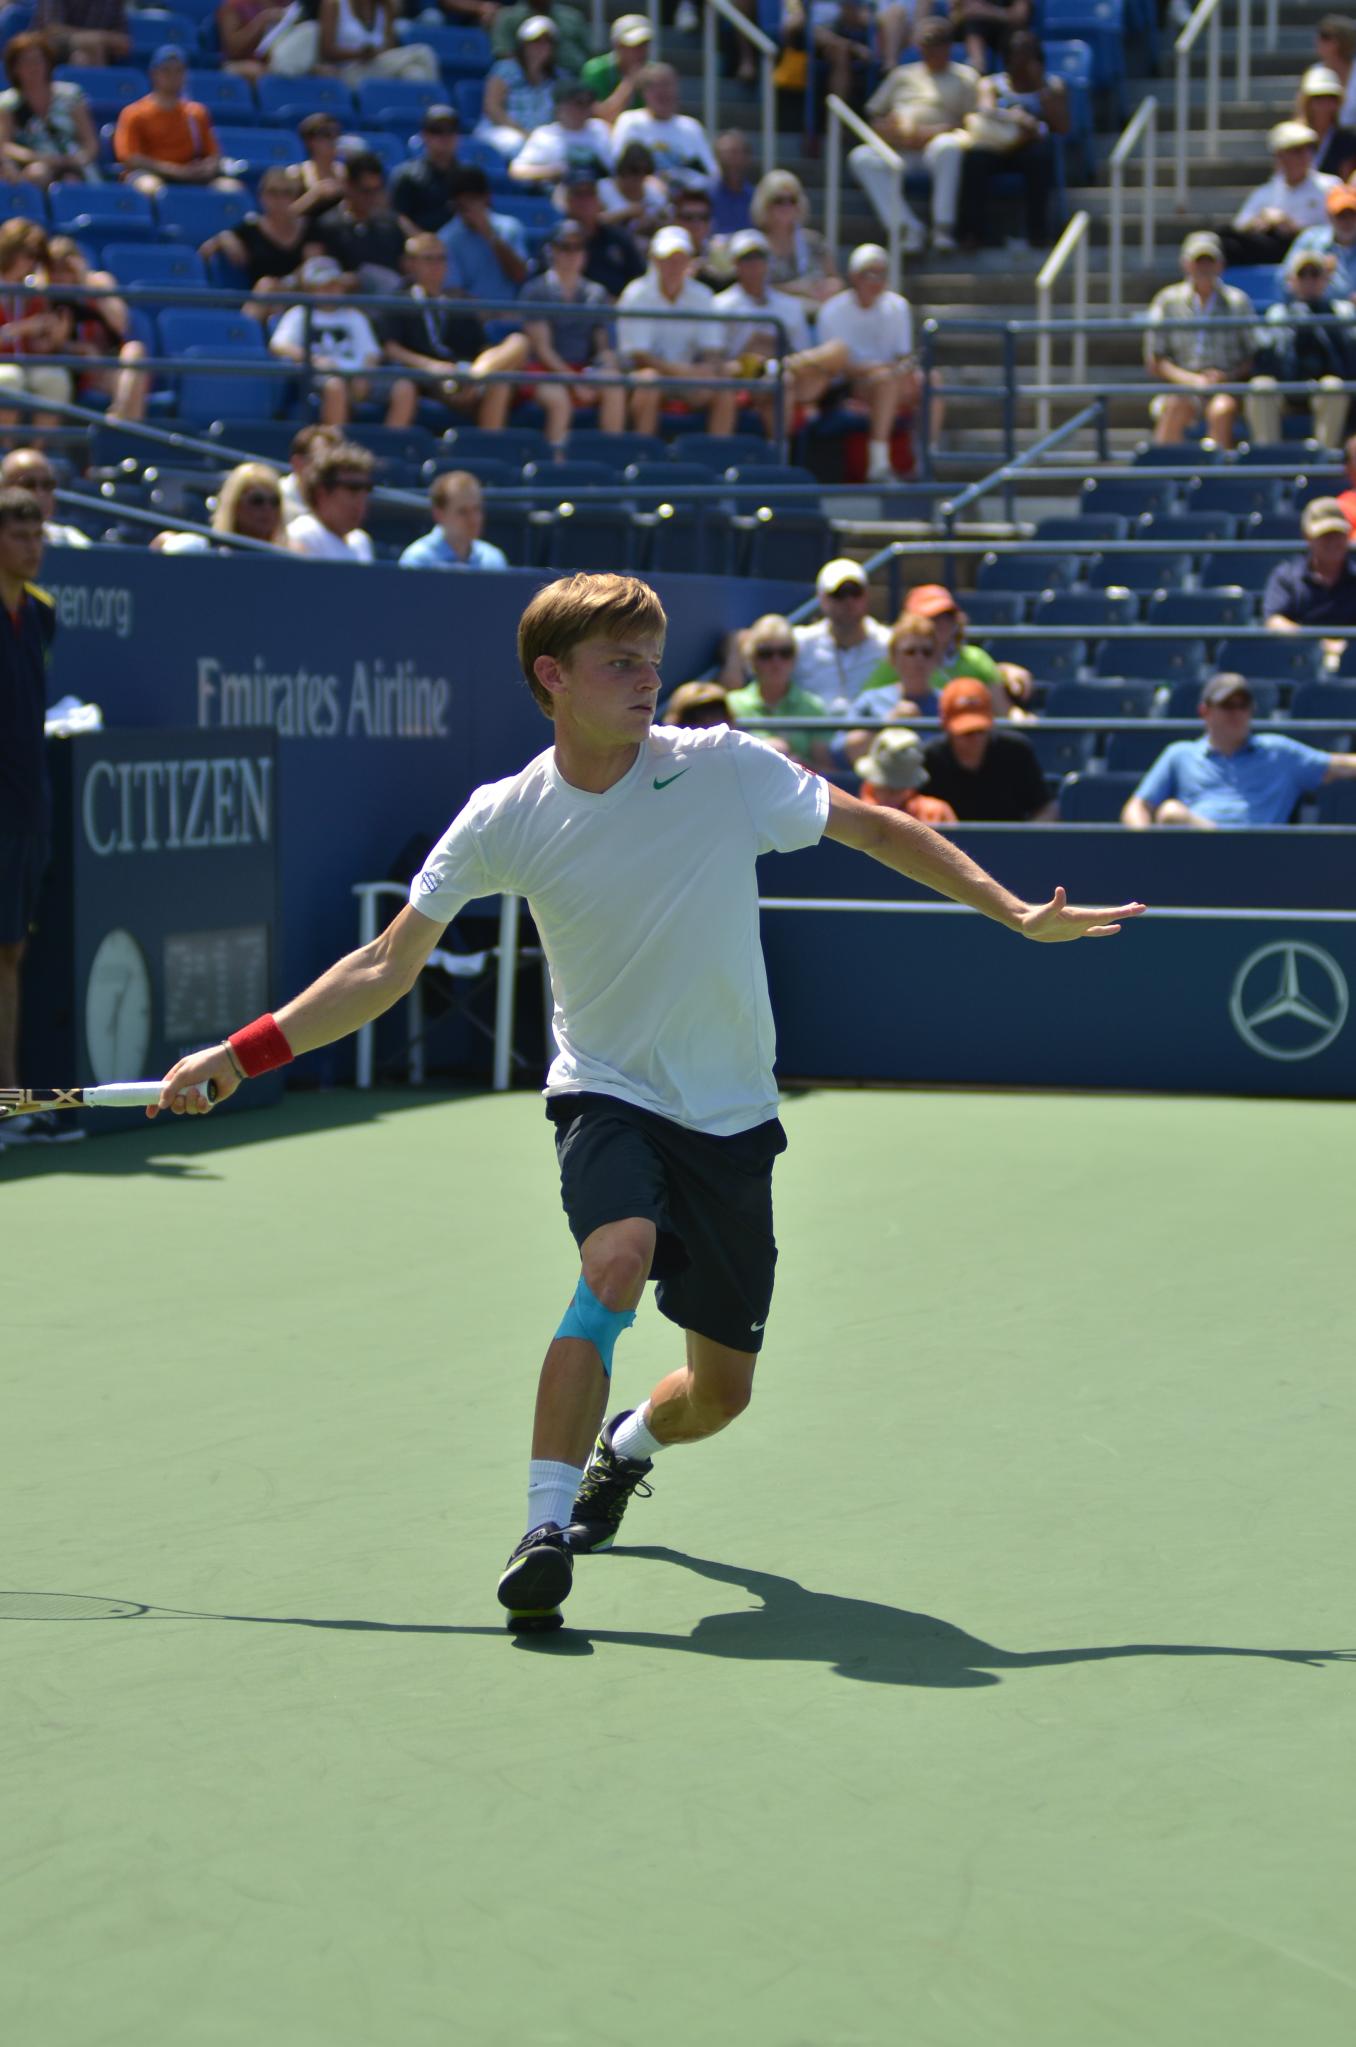 a man running across a tennis court during a tennis match